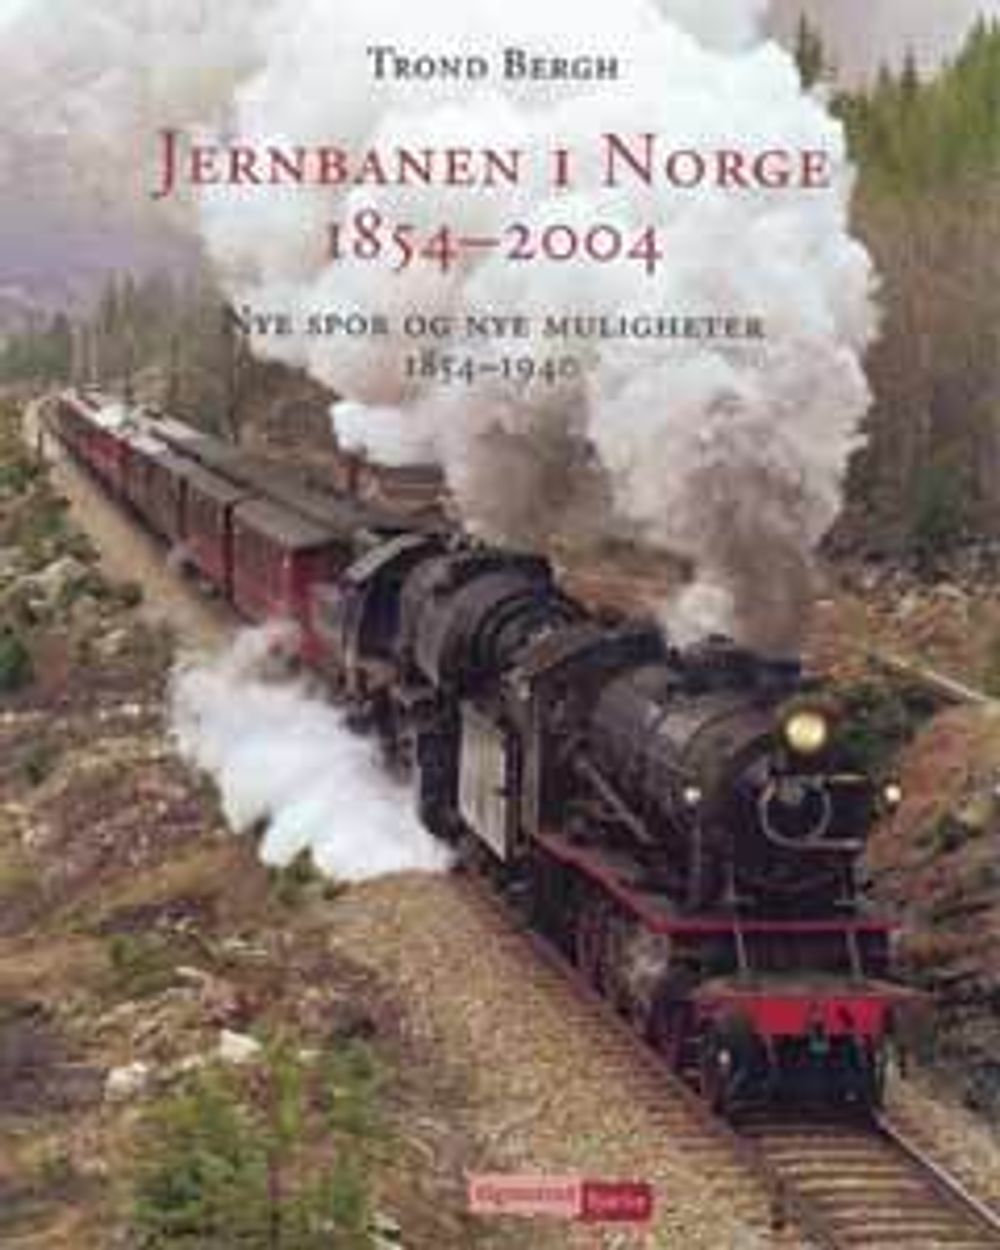  Bokverket i to bind: Nye spor og nye muligheter og Nye tider og gamle spor er utgitt av Vigmostad &amp; Bjørke AS i Bergen. ISBN 82-419-0331-6  SB